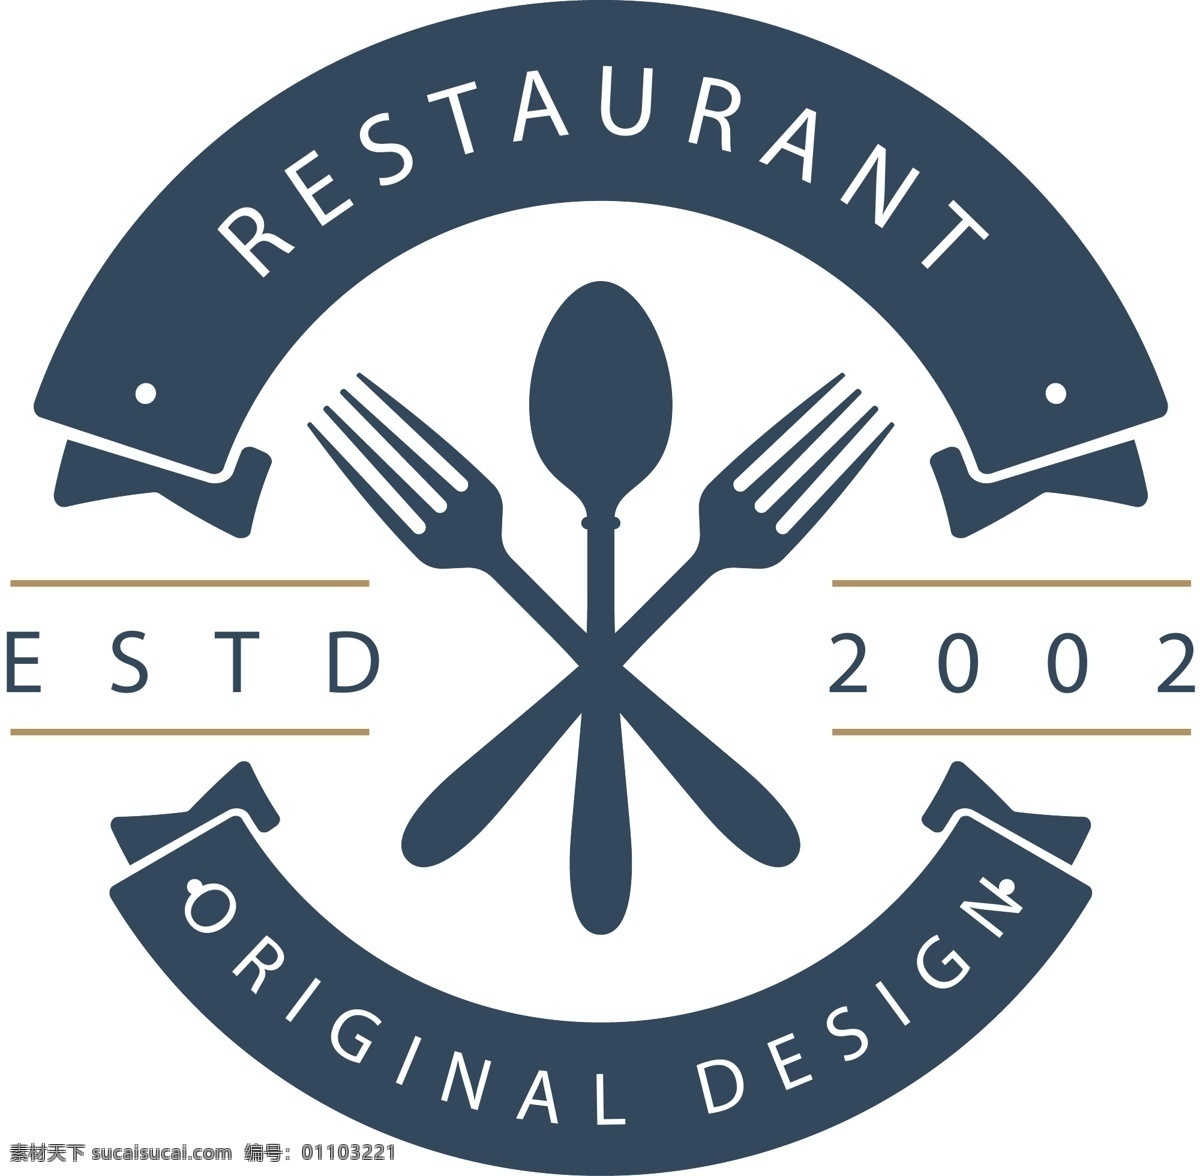 复古 餐厅 图标 元素 复古logo logo 标志 标志设计 矢量素材 创意标志 简约 企业logo 标志图标 品牌标志 图标设计 公司标志 图标元素